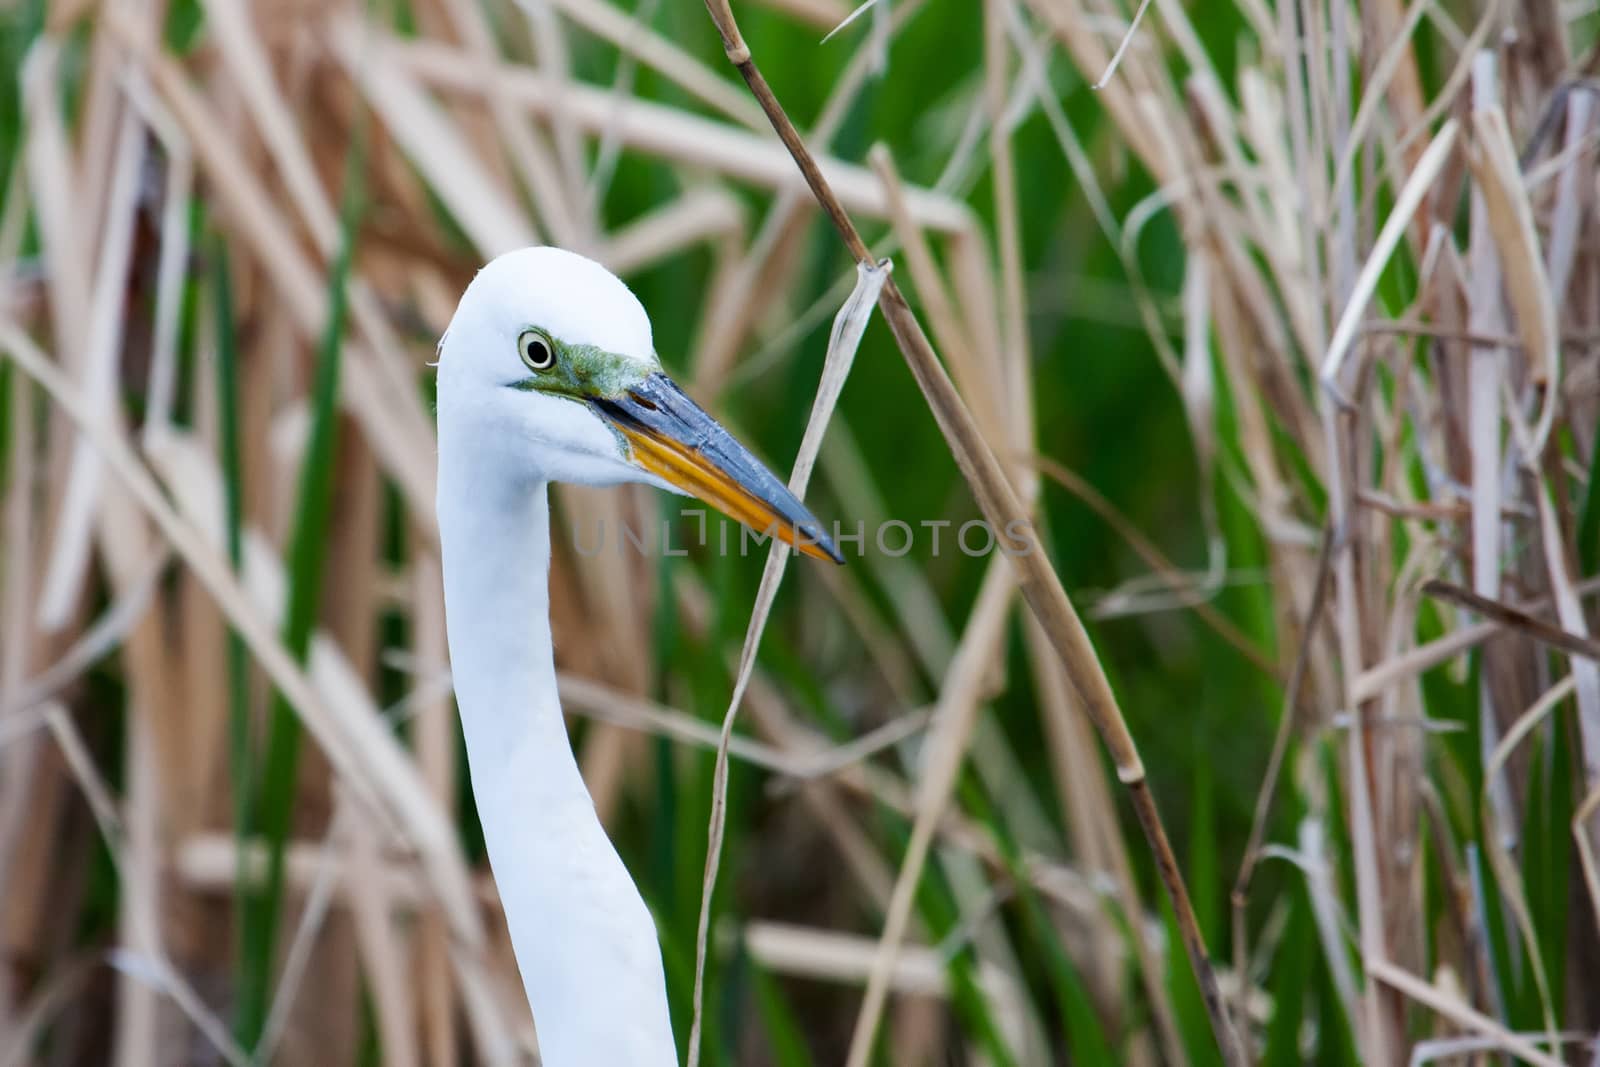 White Heron in grass hiding iin grass